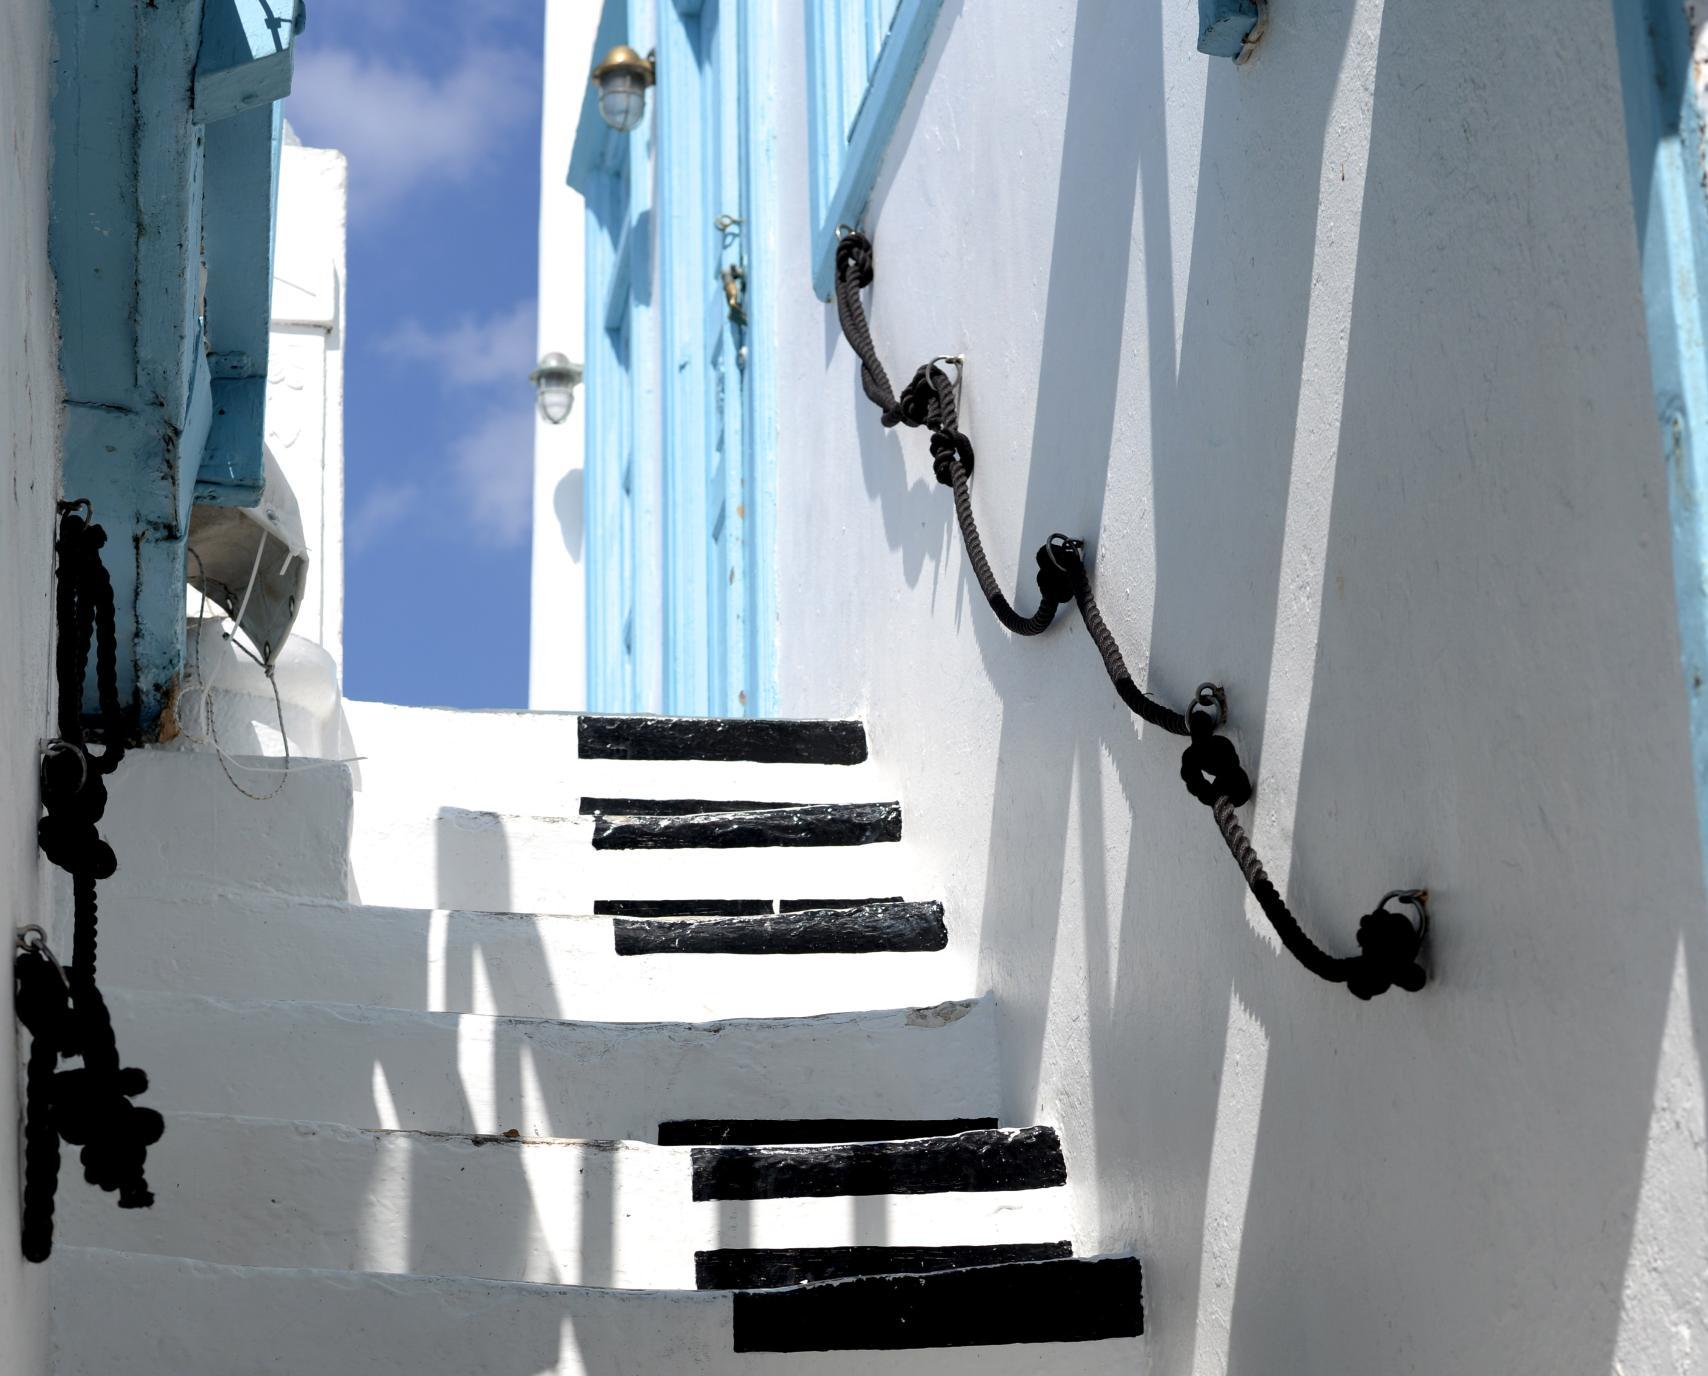 Griechische Gasse, weißgetünchte Wände, blaue Fenster und Türen. Eine Treppe führt nach oben, auf den weißen Stufen sind schwarze Klaviertasten aufgemalt.